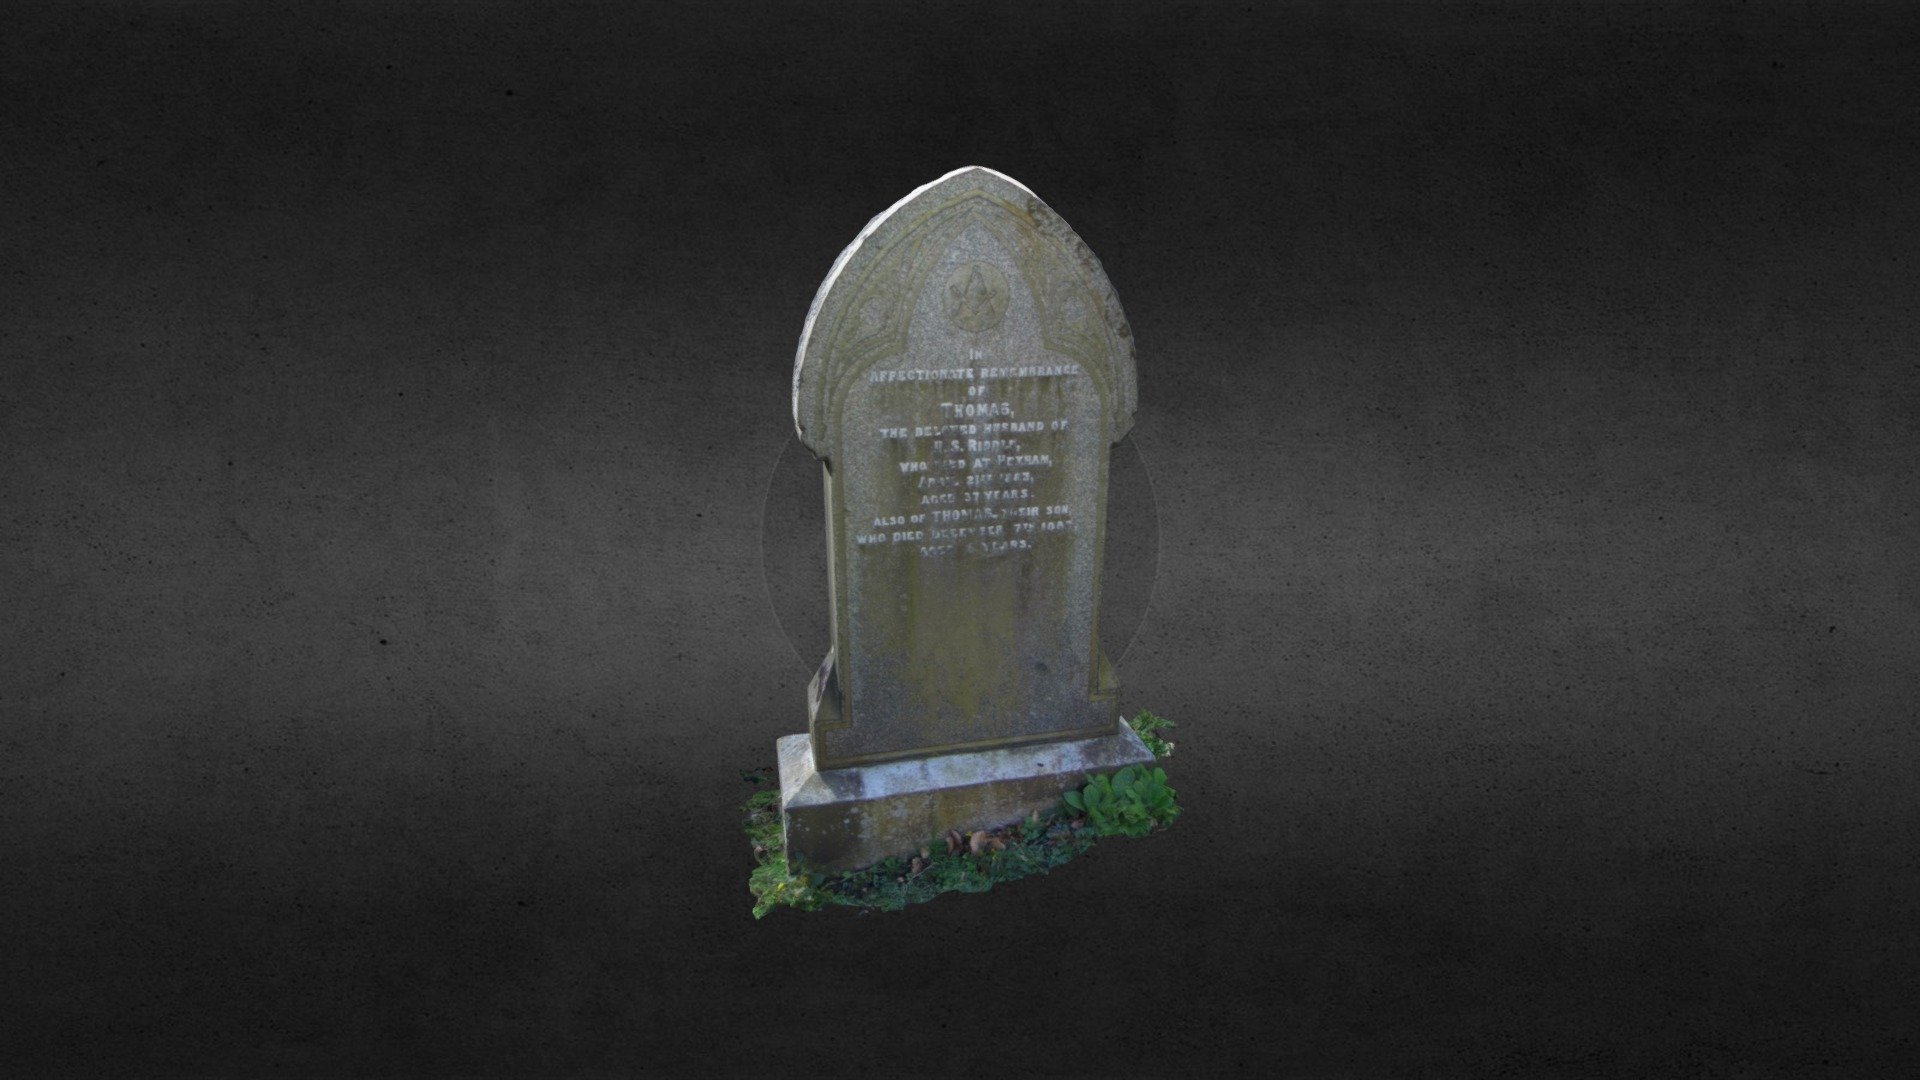 Thomas Riddle gravestone, Hexham, Northumberland